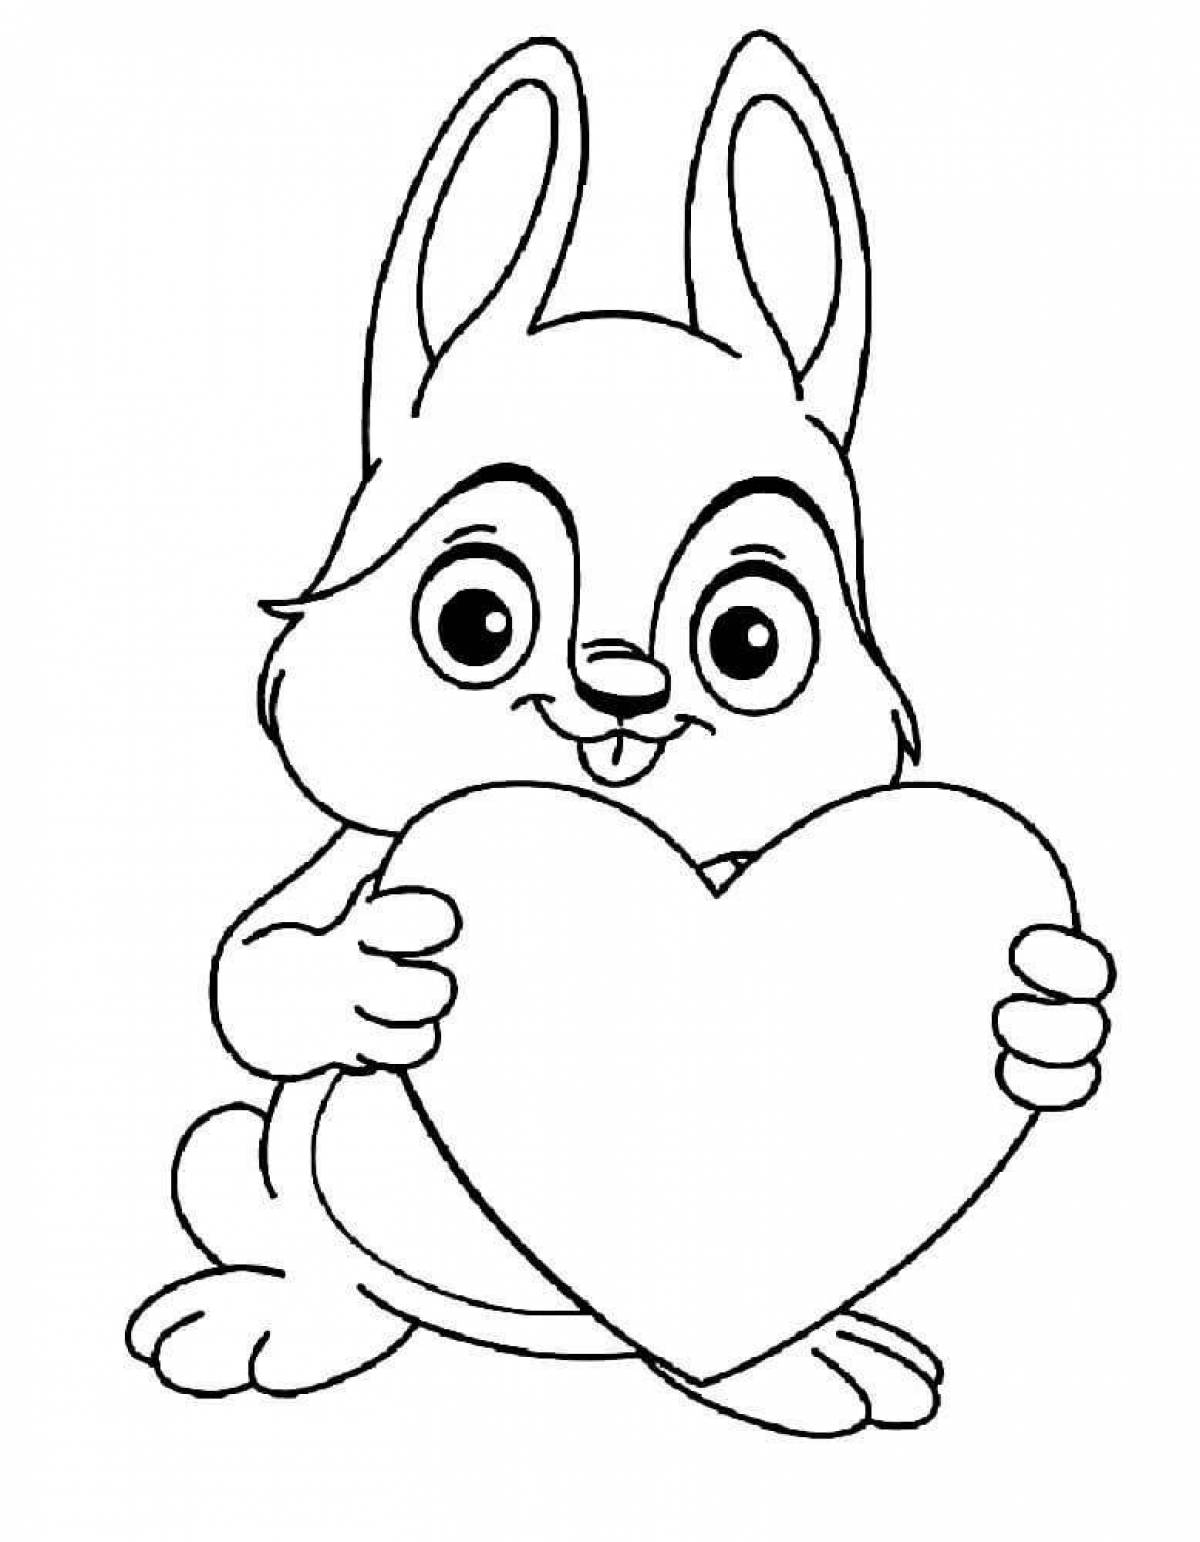 Забавный рисунок кролика-раскраски